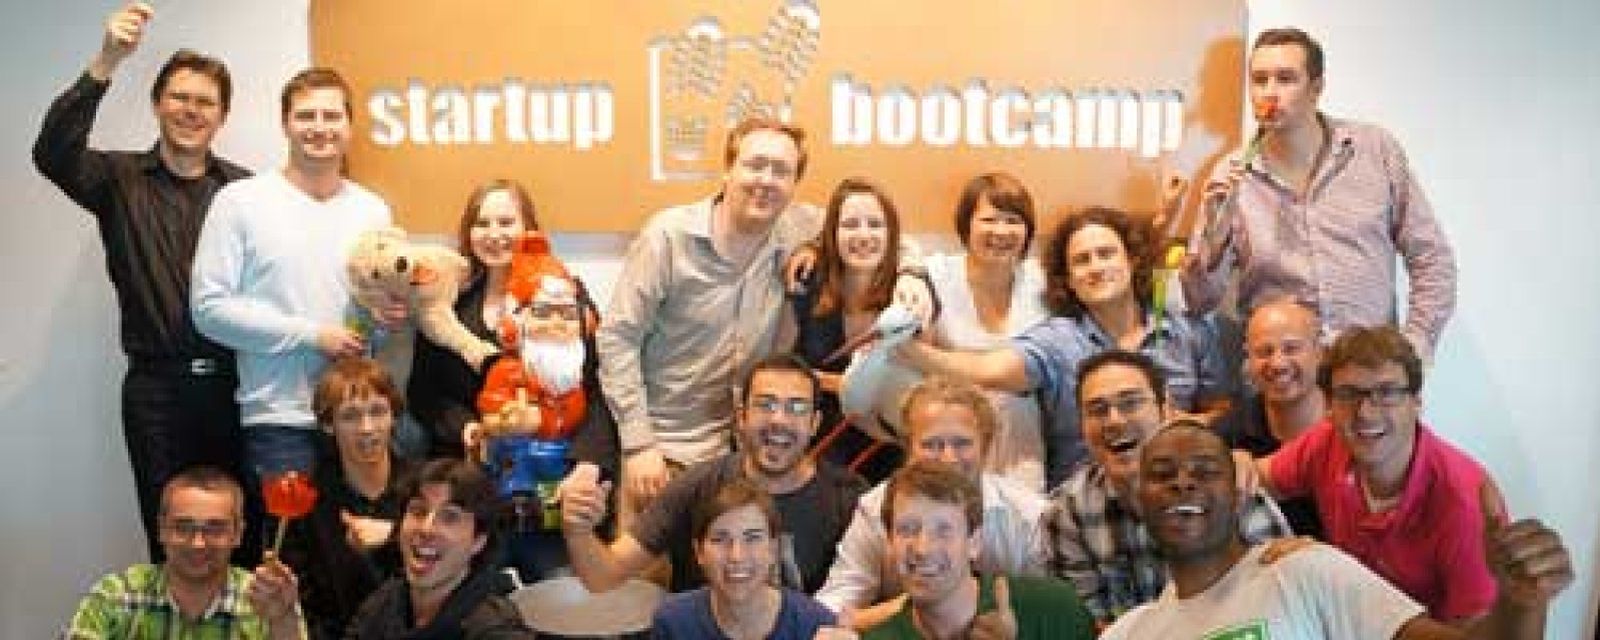 Foto: Startupbootcamp se expande al 'Silicon Valley' de Israel